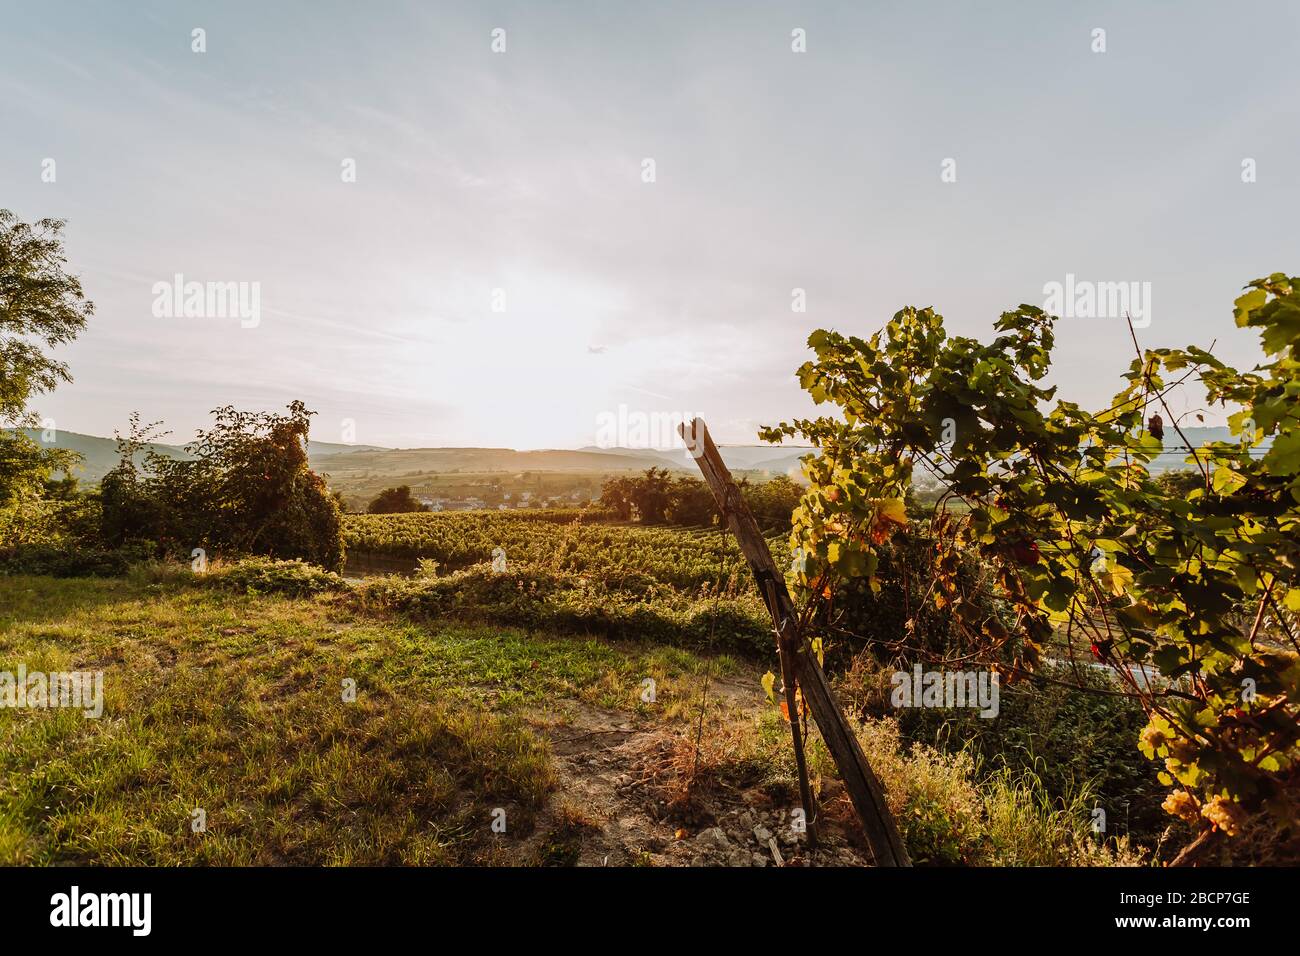 Beautiful sunset over vineyards, sunrise landscape Stock Photo